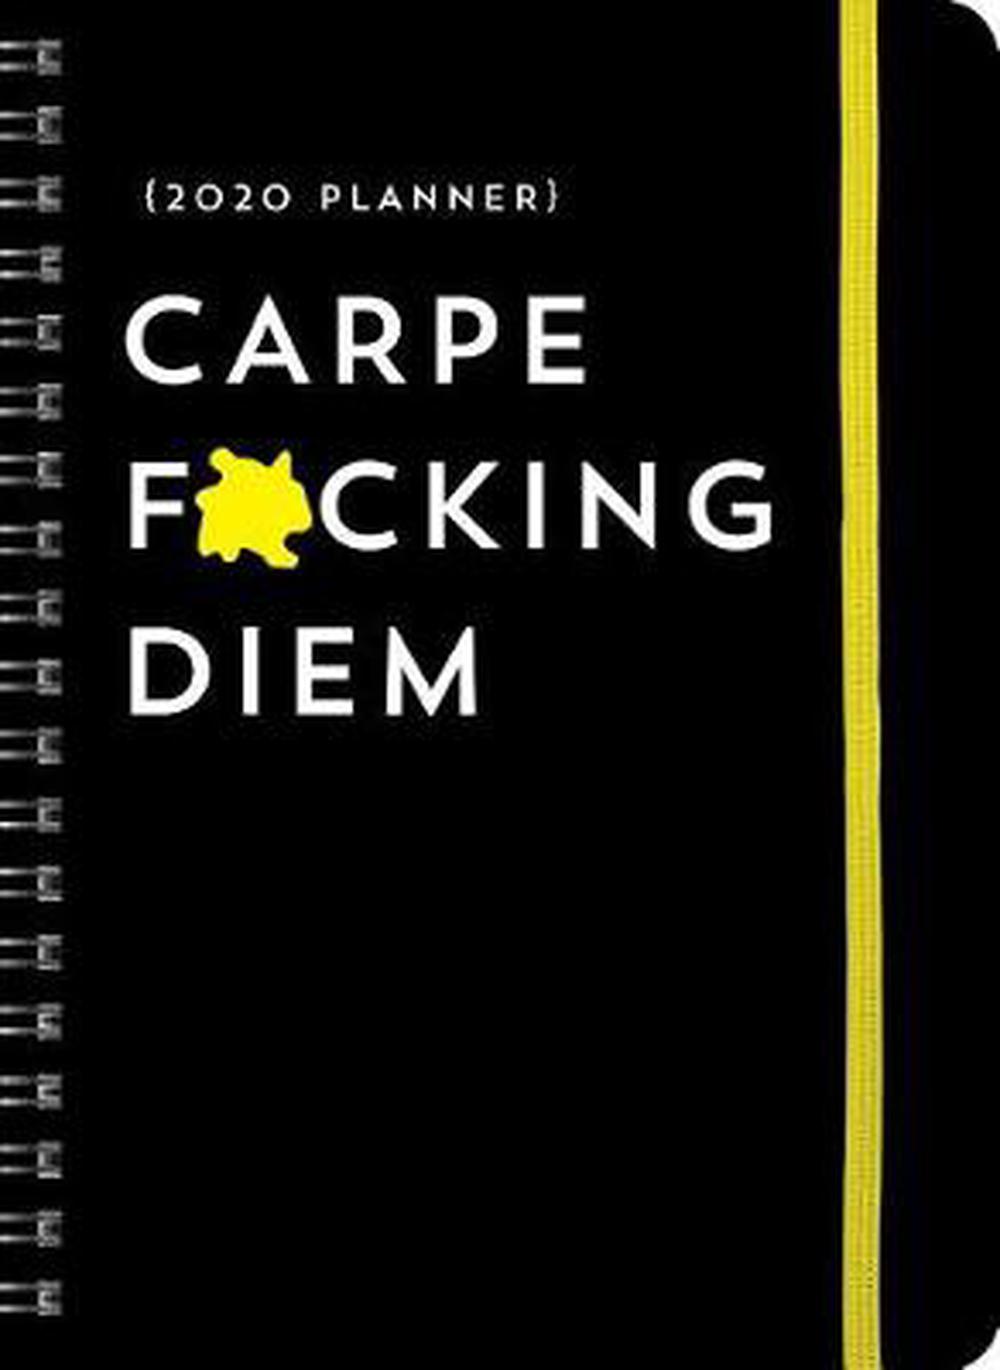 2020 Carpe F*cking Diem Planner by Sourcebooks Spiral Book Free